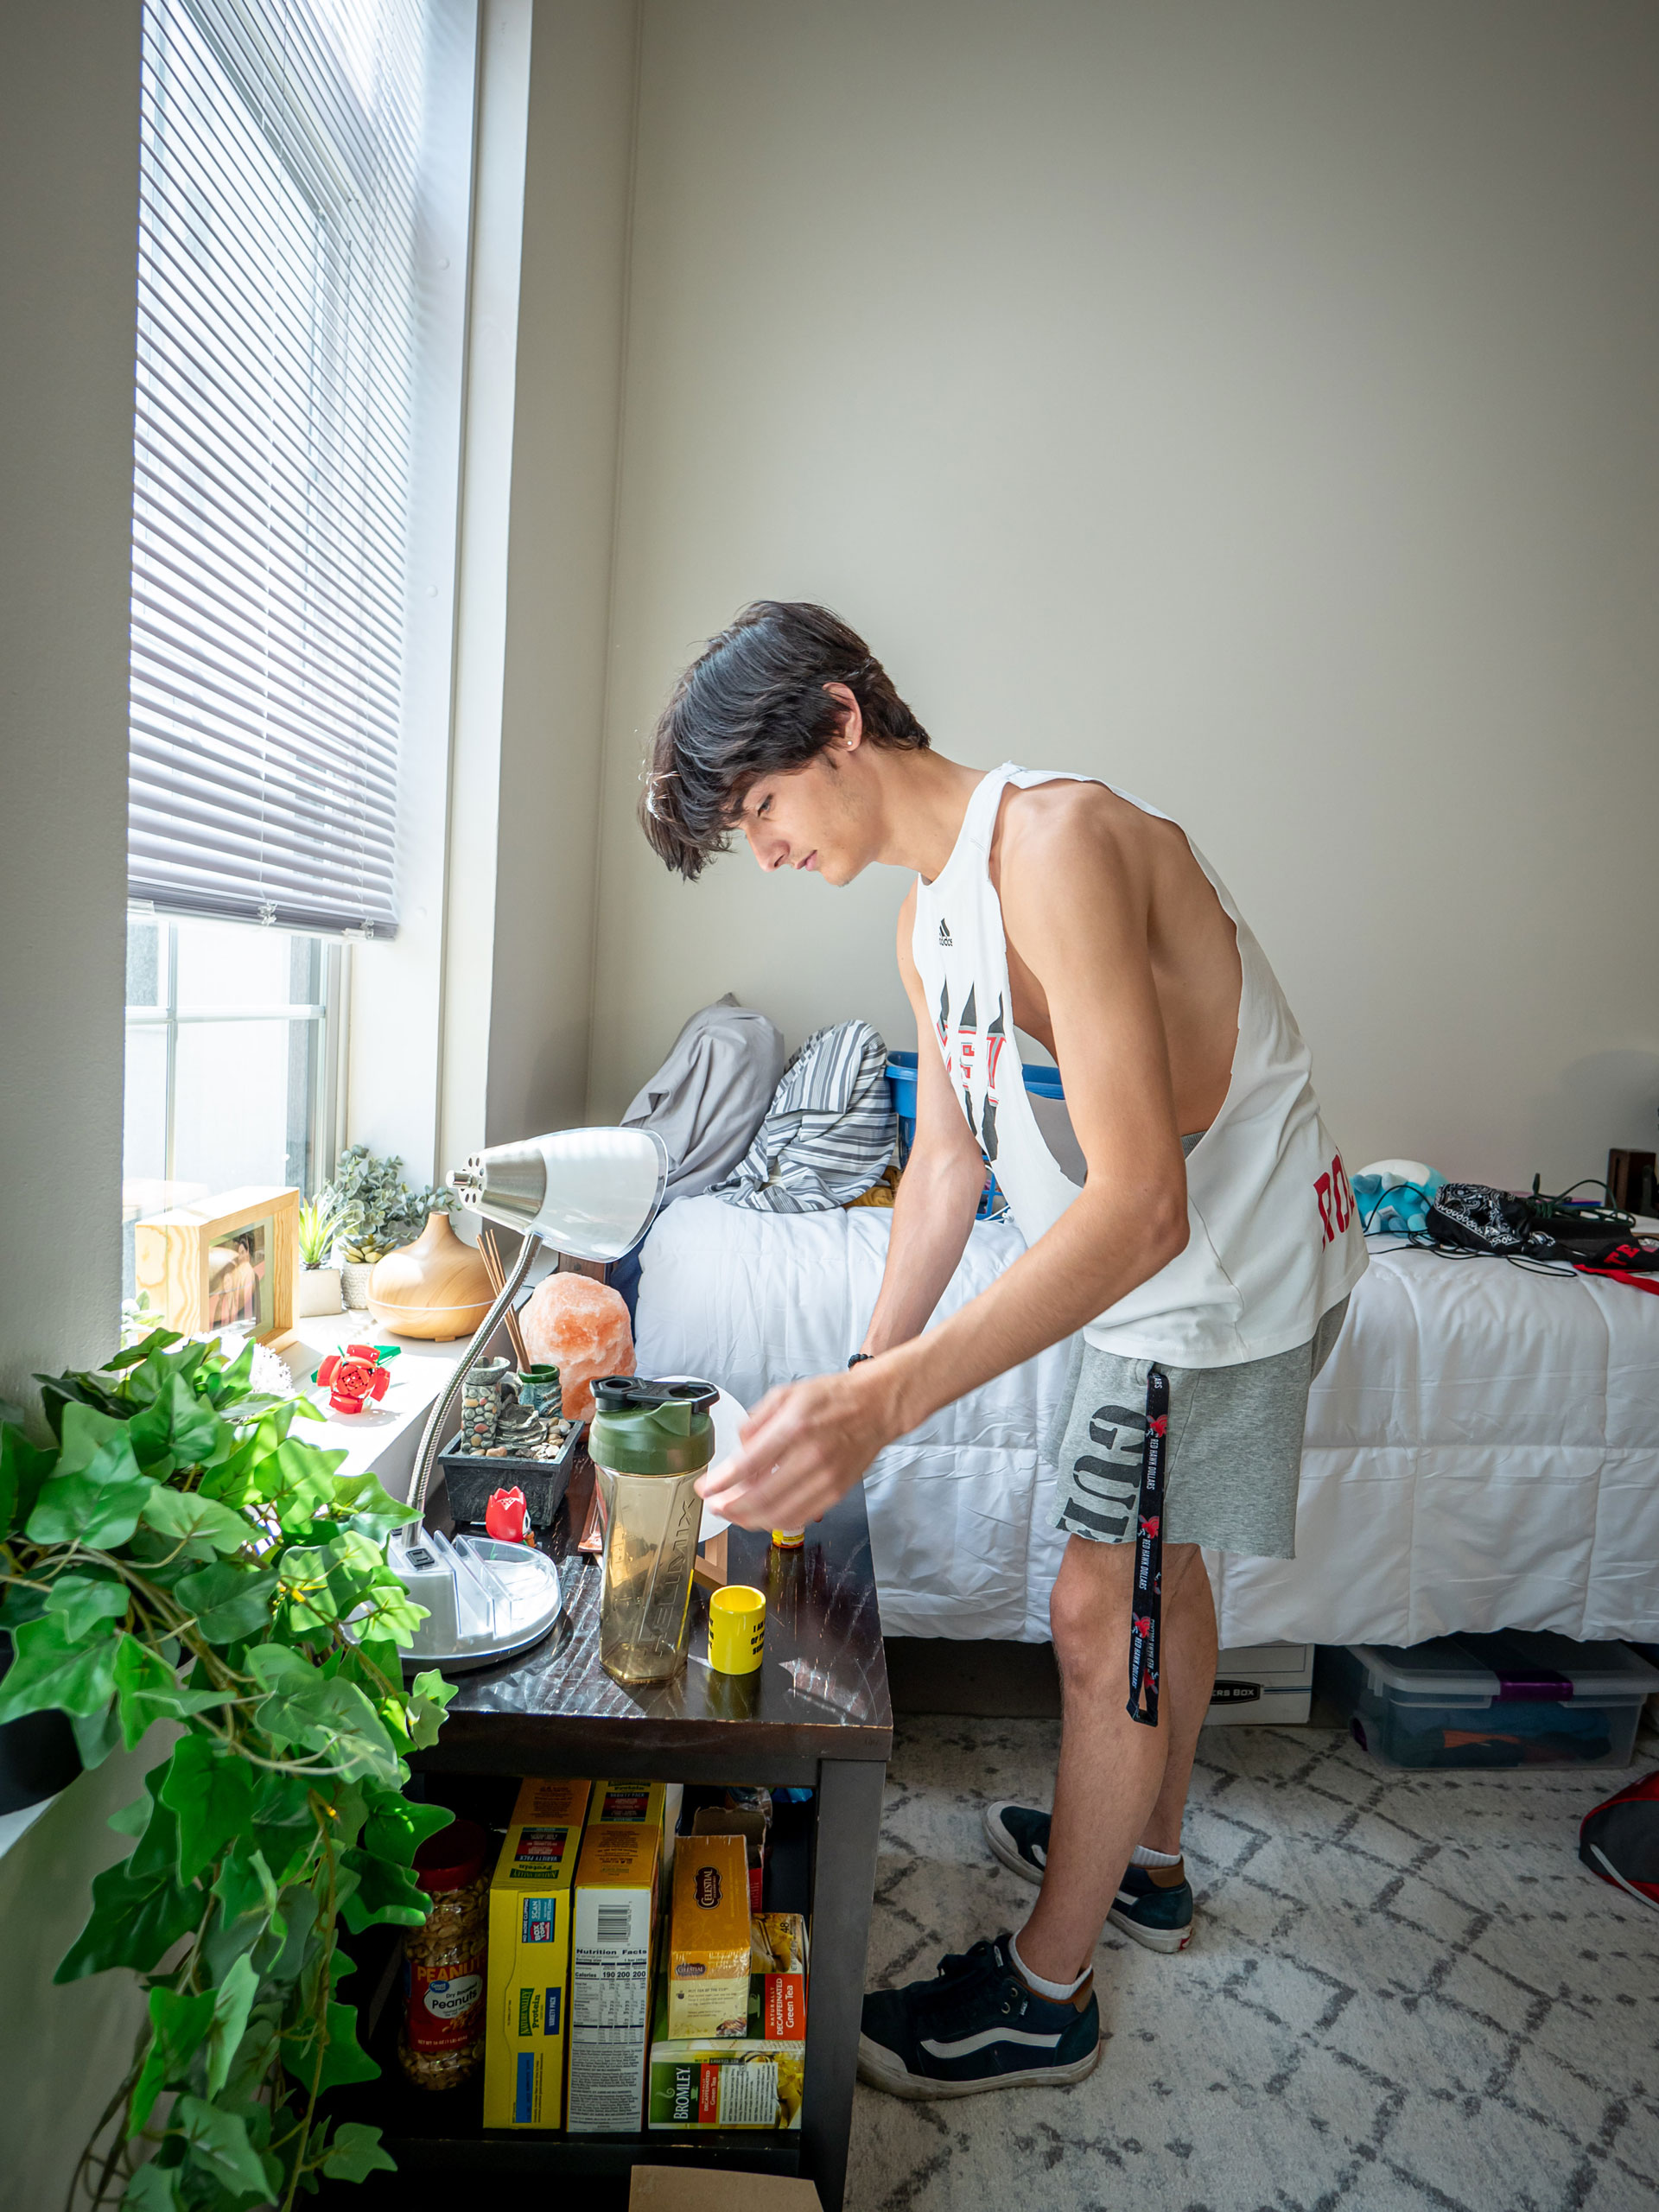 A young man sets up his dorm room.